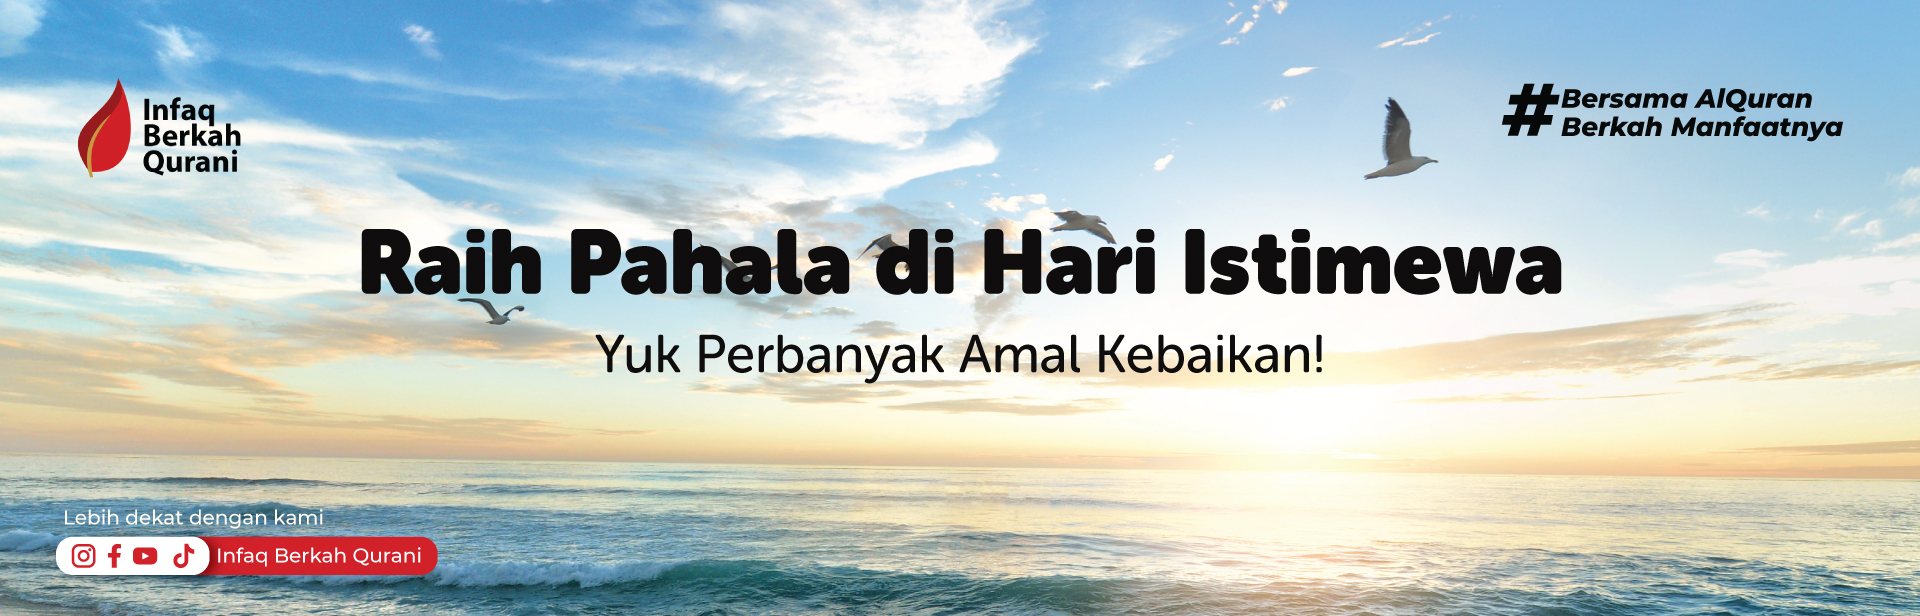 You are currently viewing Raih Pahala di Hari Istimewa (Yuk perbanyak amal Kebaikan)